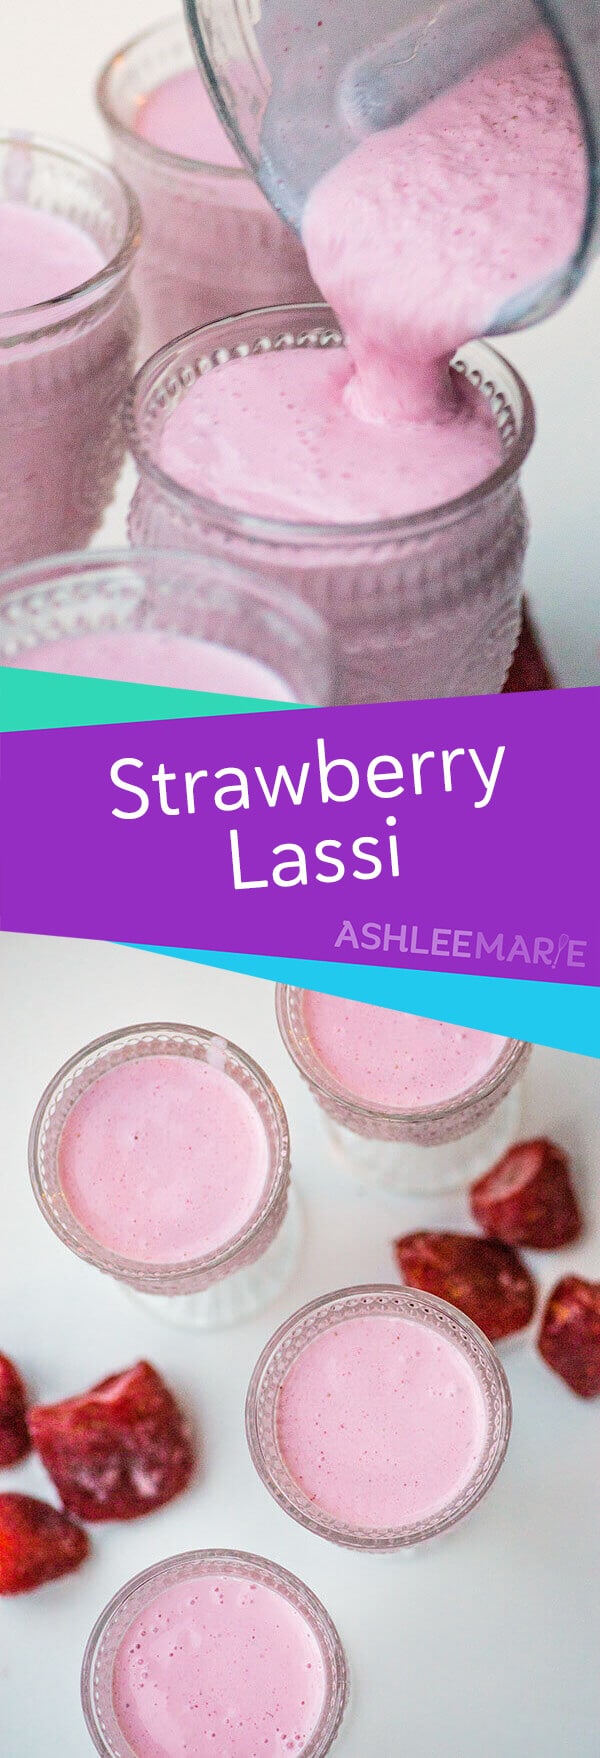 strawberry lassi recipe